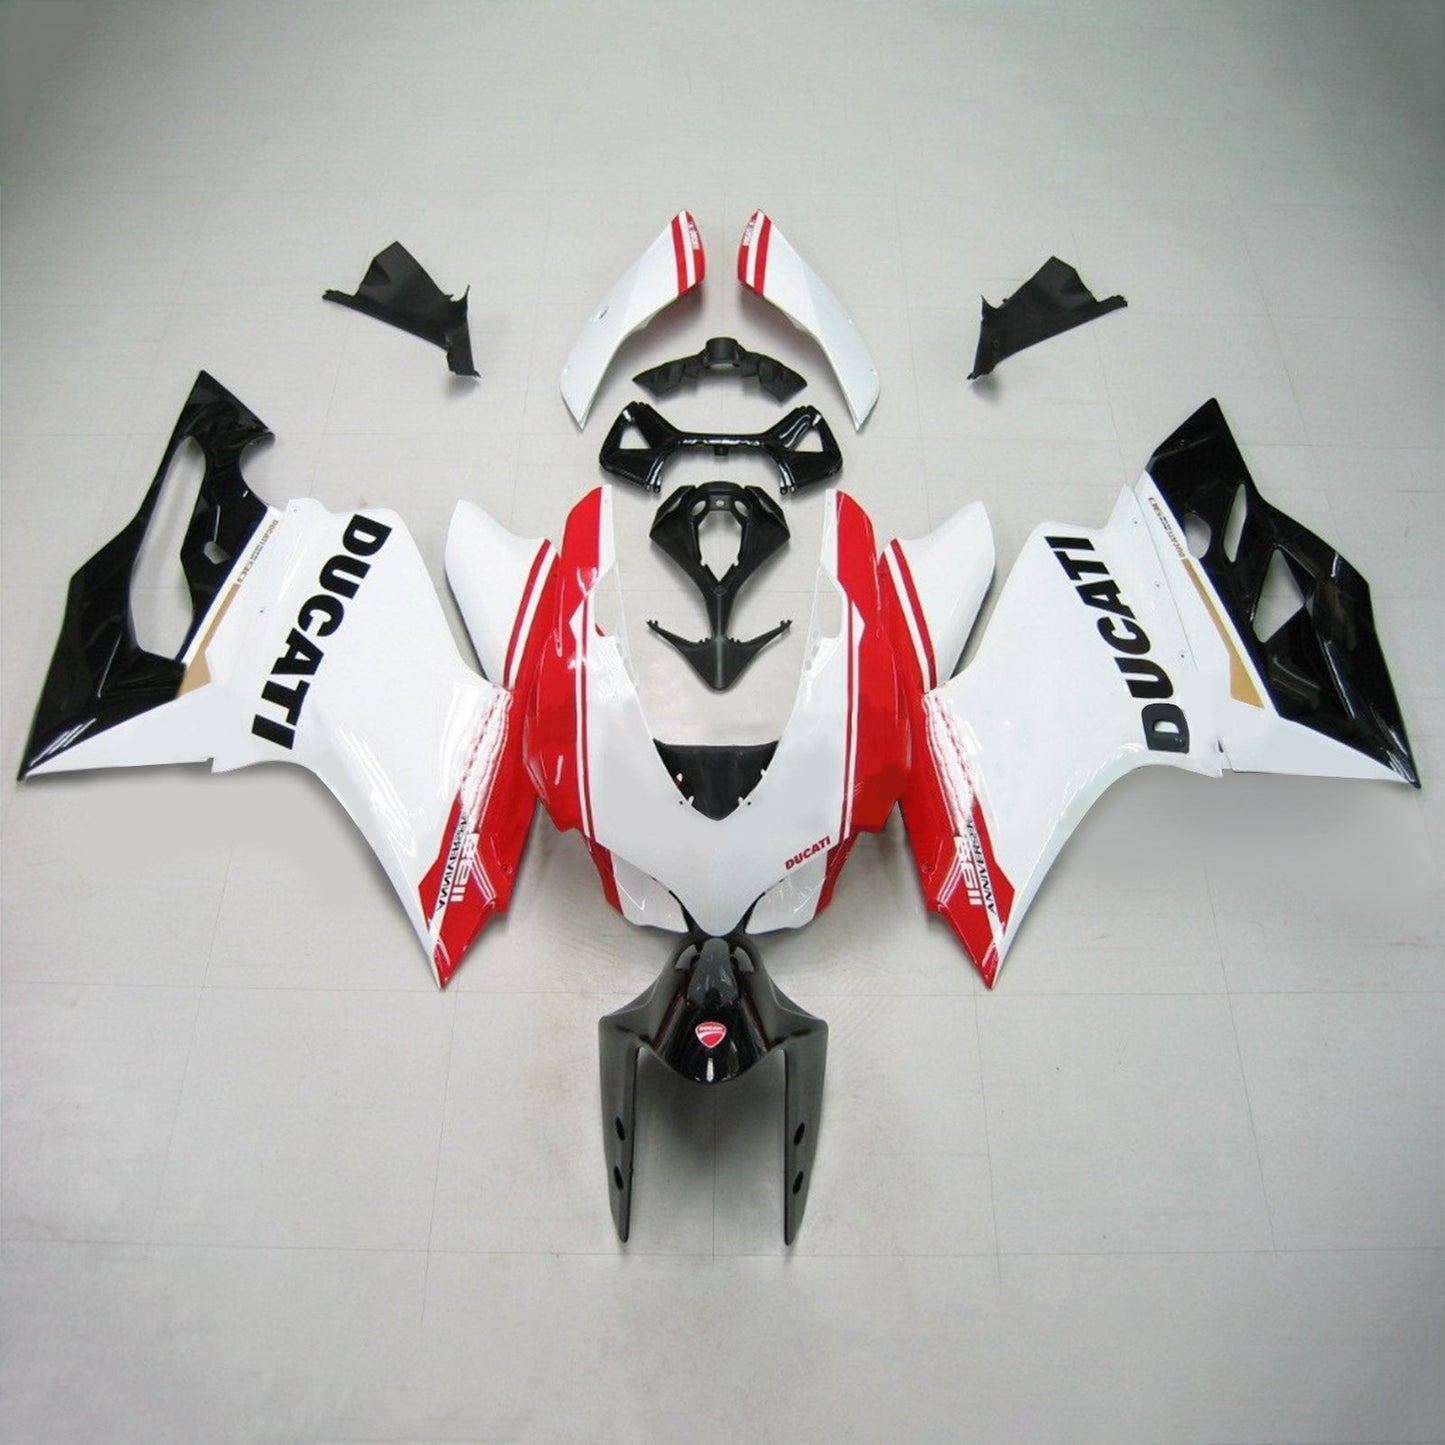 Amotopart Ducati 2012-2014 1199/899 Schwarz wei? rote Verkleidung Kit